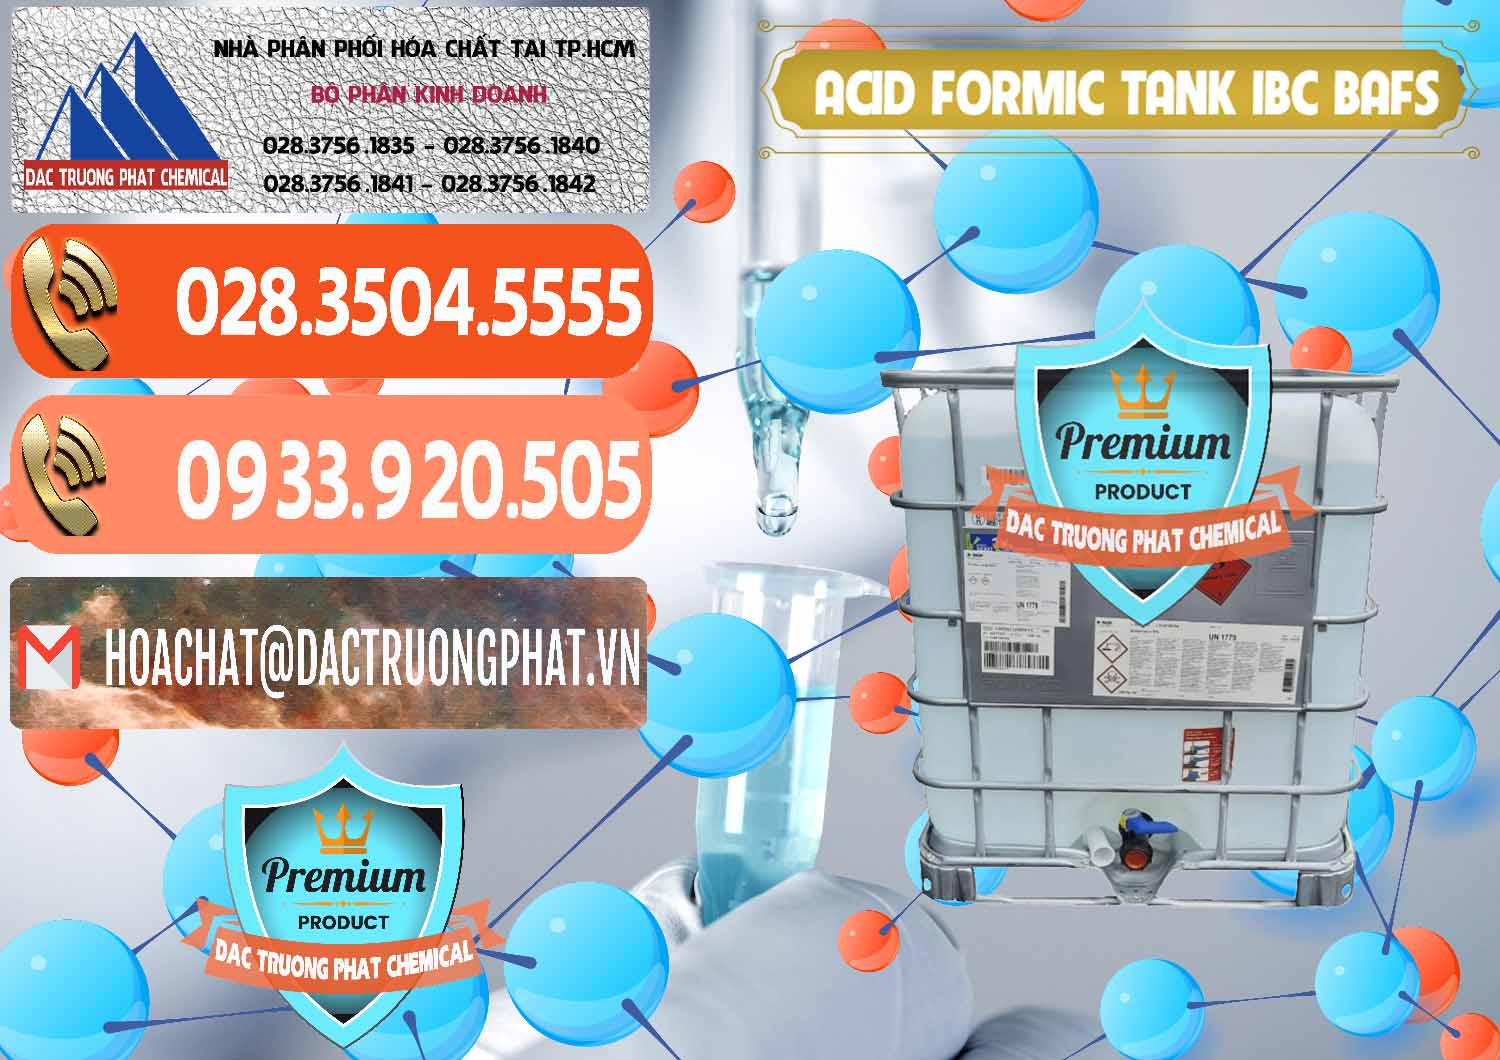 Nơi chuyên bán và cung cấp Acid Formic - Axit Formic Tank - Bồn IBC BASF Đức - 0366 - Cty cung cấp & phân phối hóa chất tại TP.HCM - hoachatmientay.com